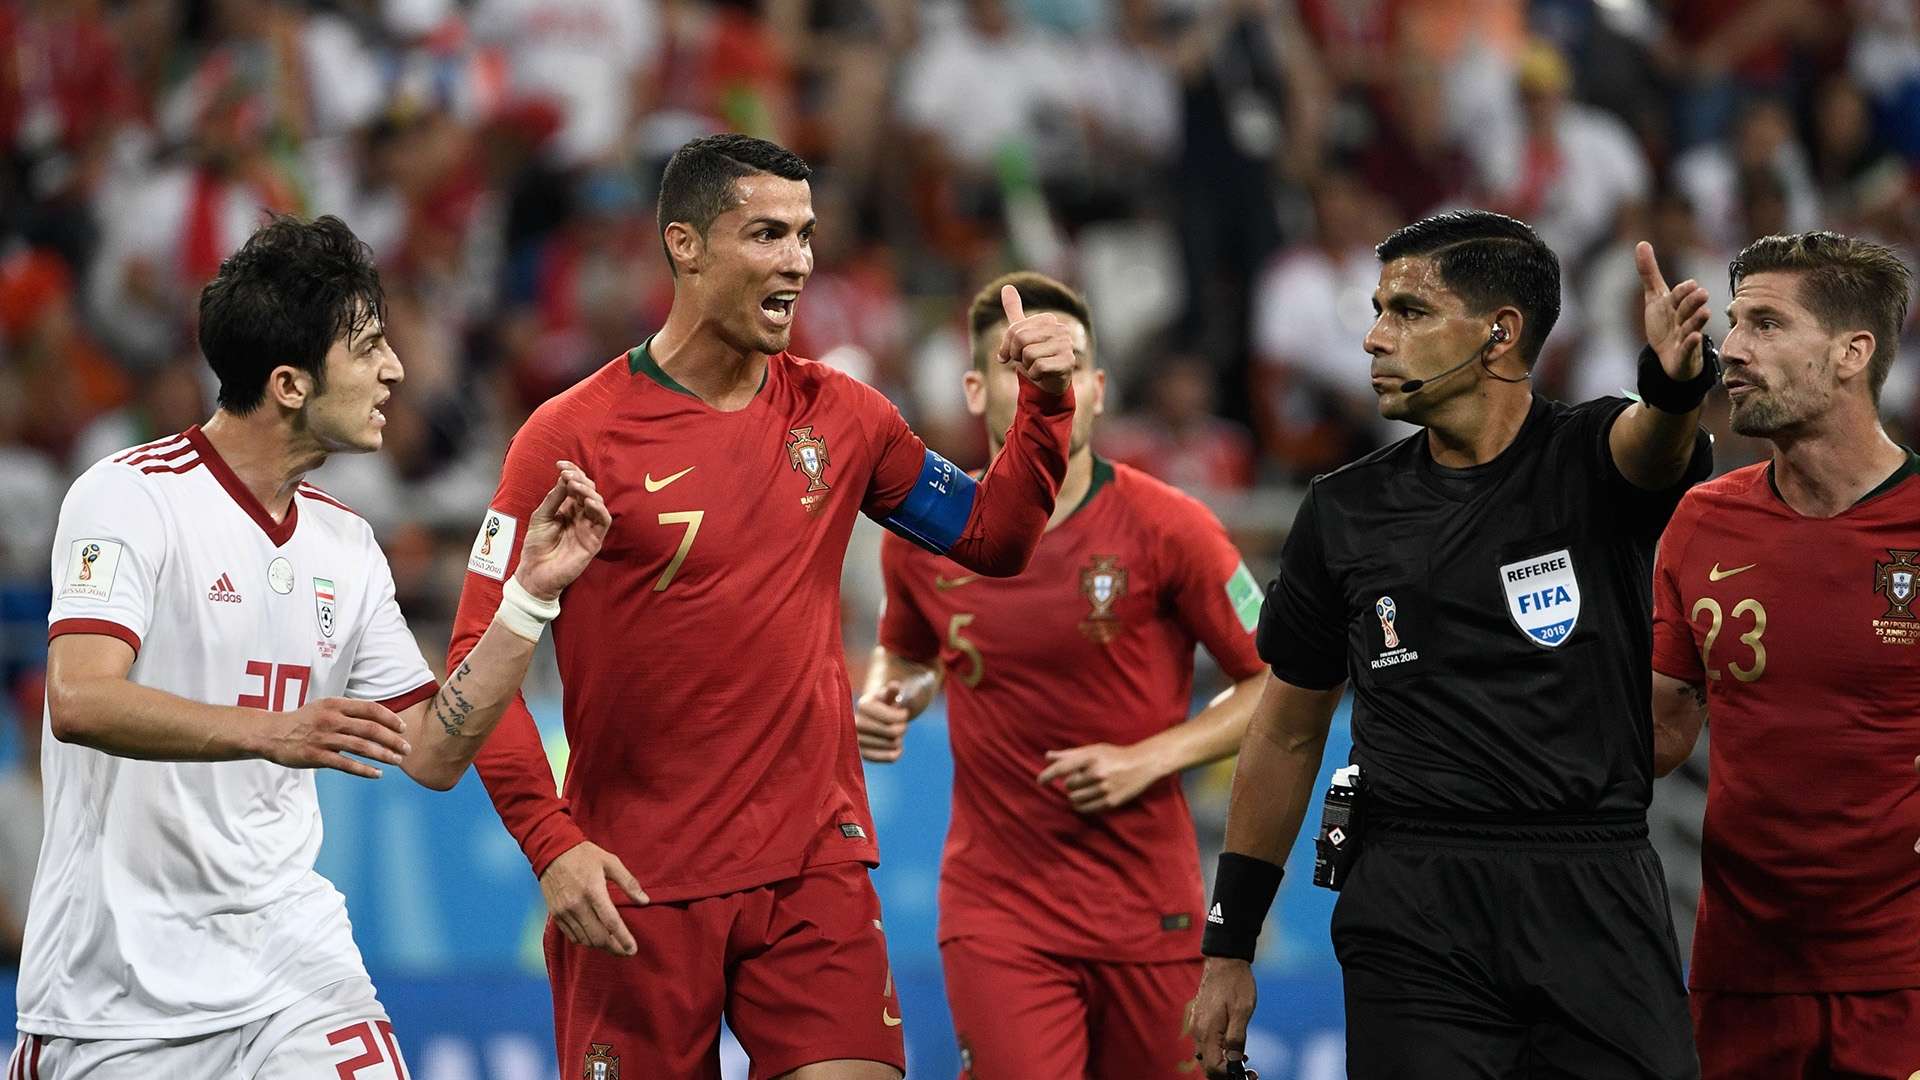 Cristiano Ronaldo referee Portugal Iran World Cup 2018